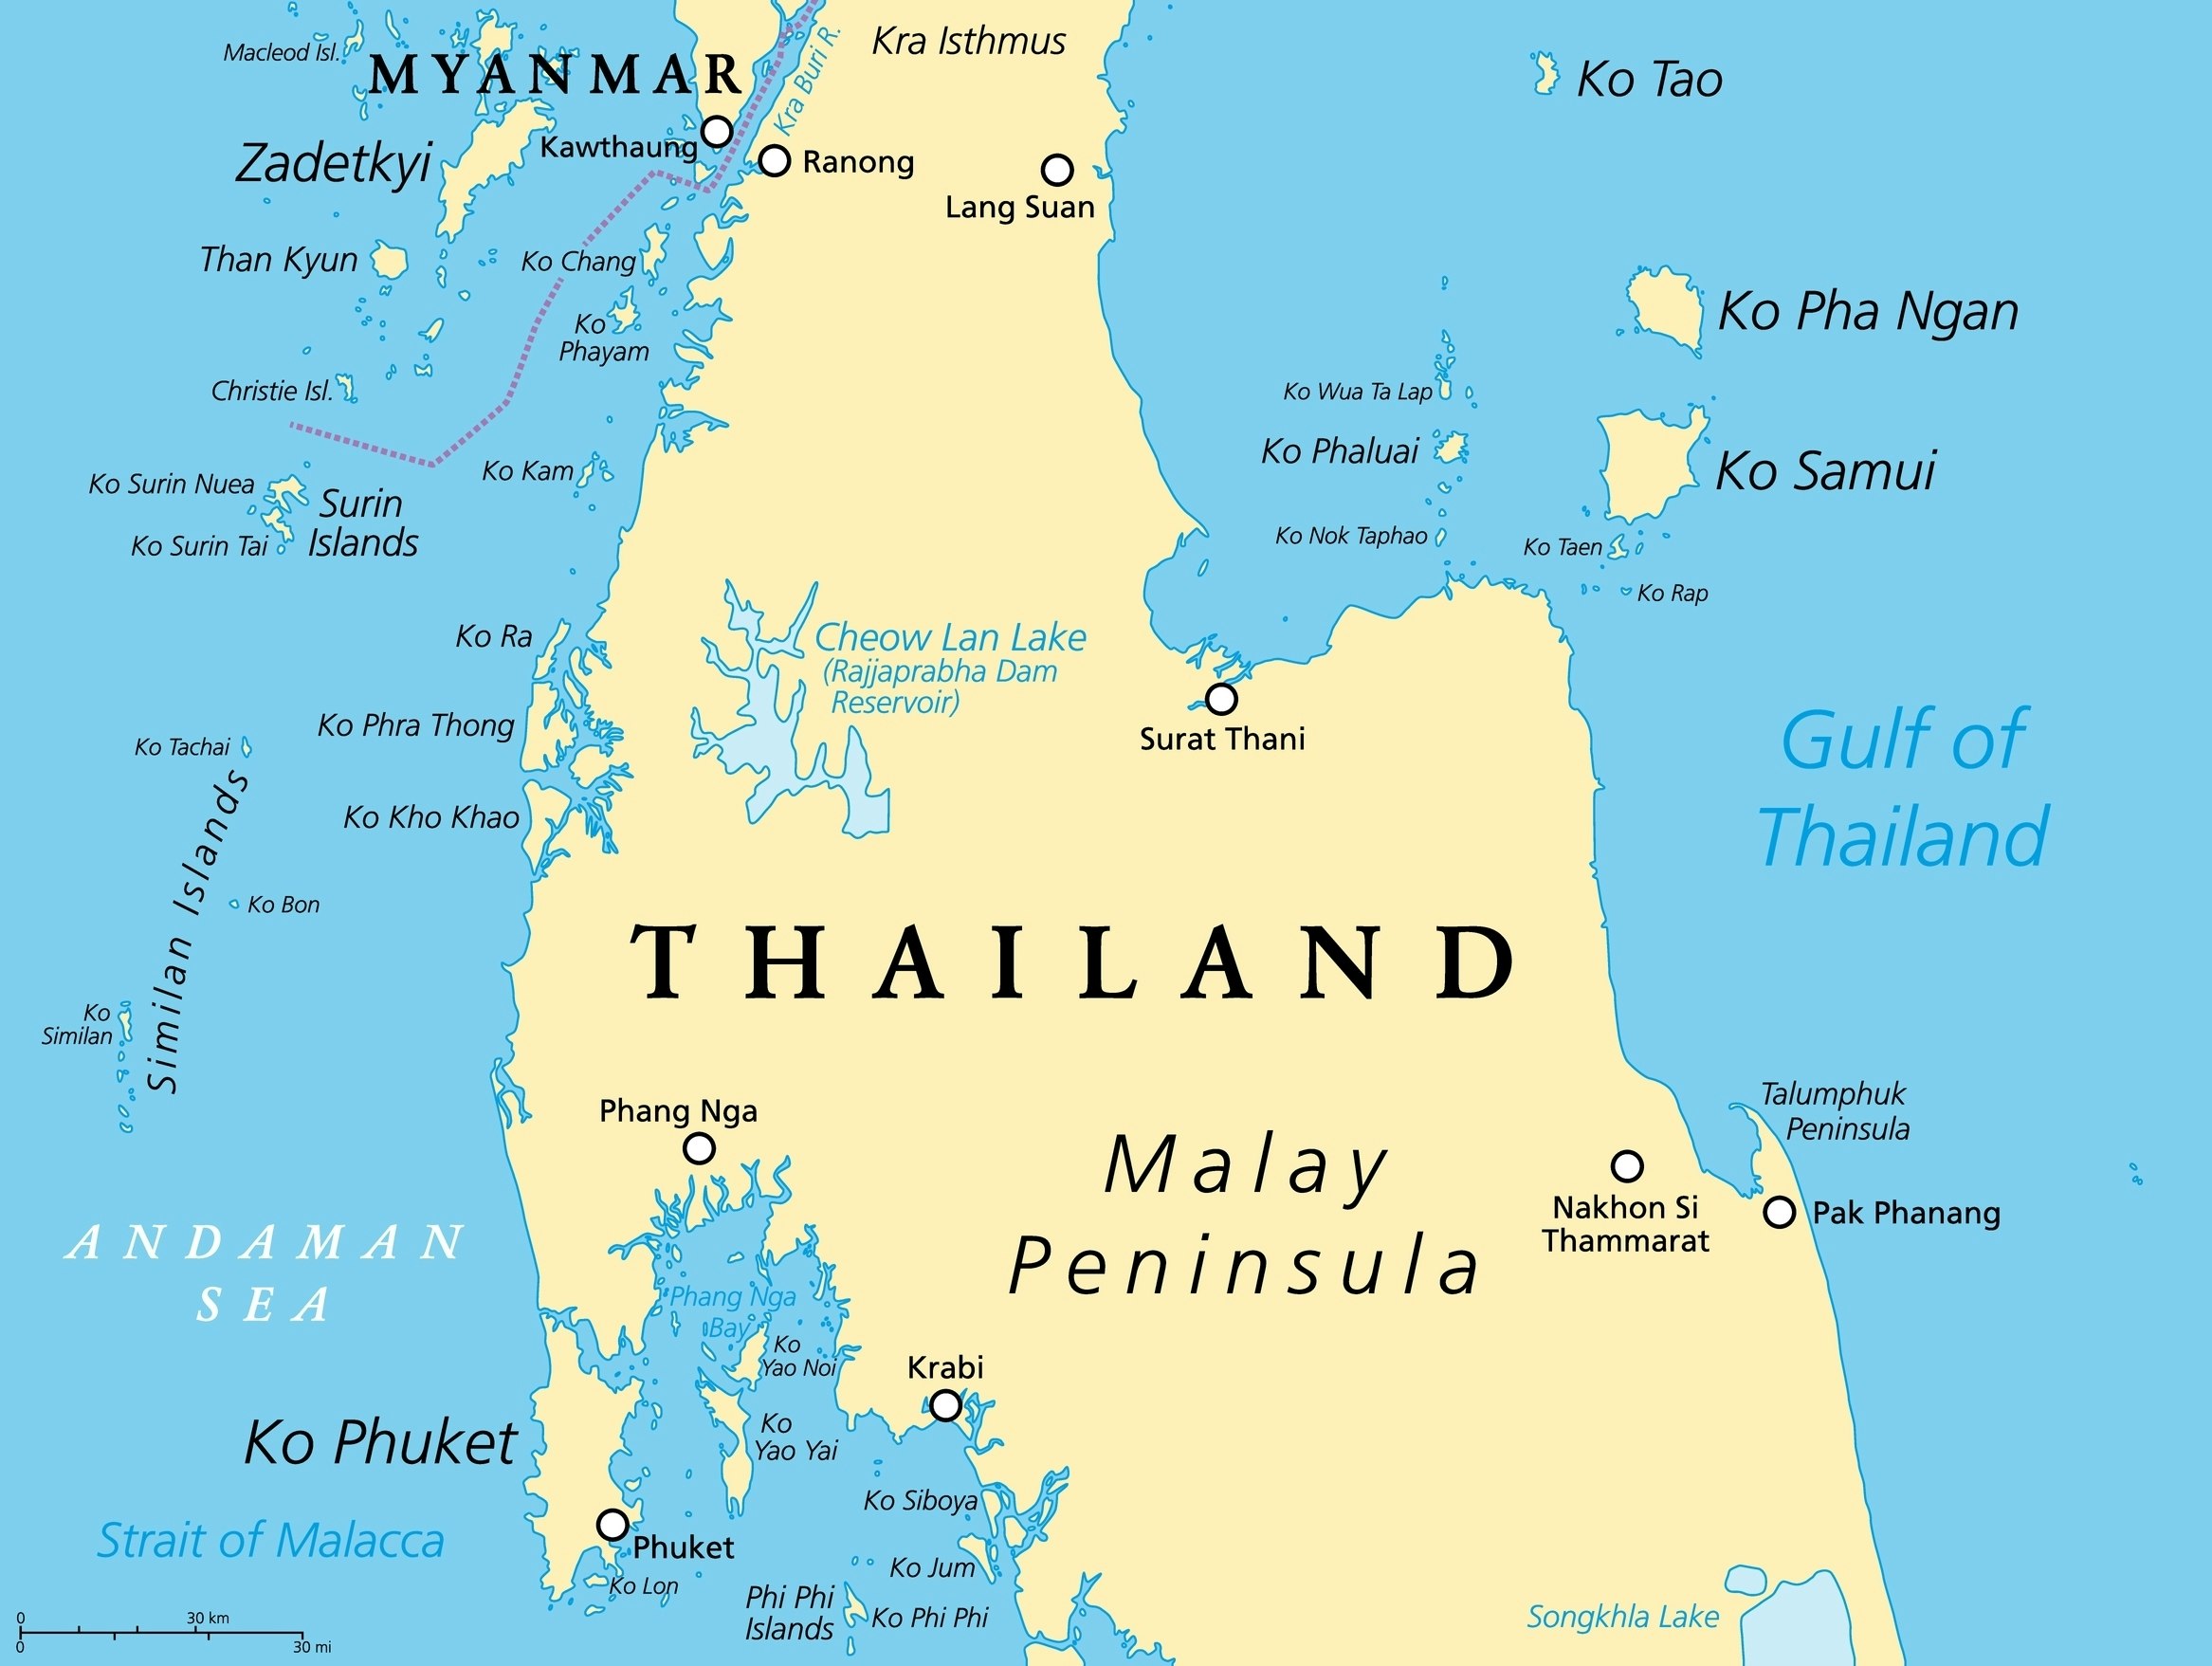 Χάρτης της Ταϊλάνδης με τα πιο σημαντικά νησιά και πόλεις.